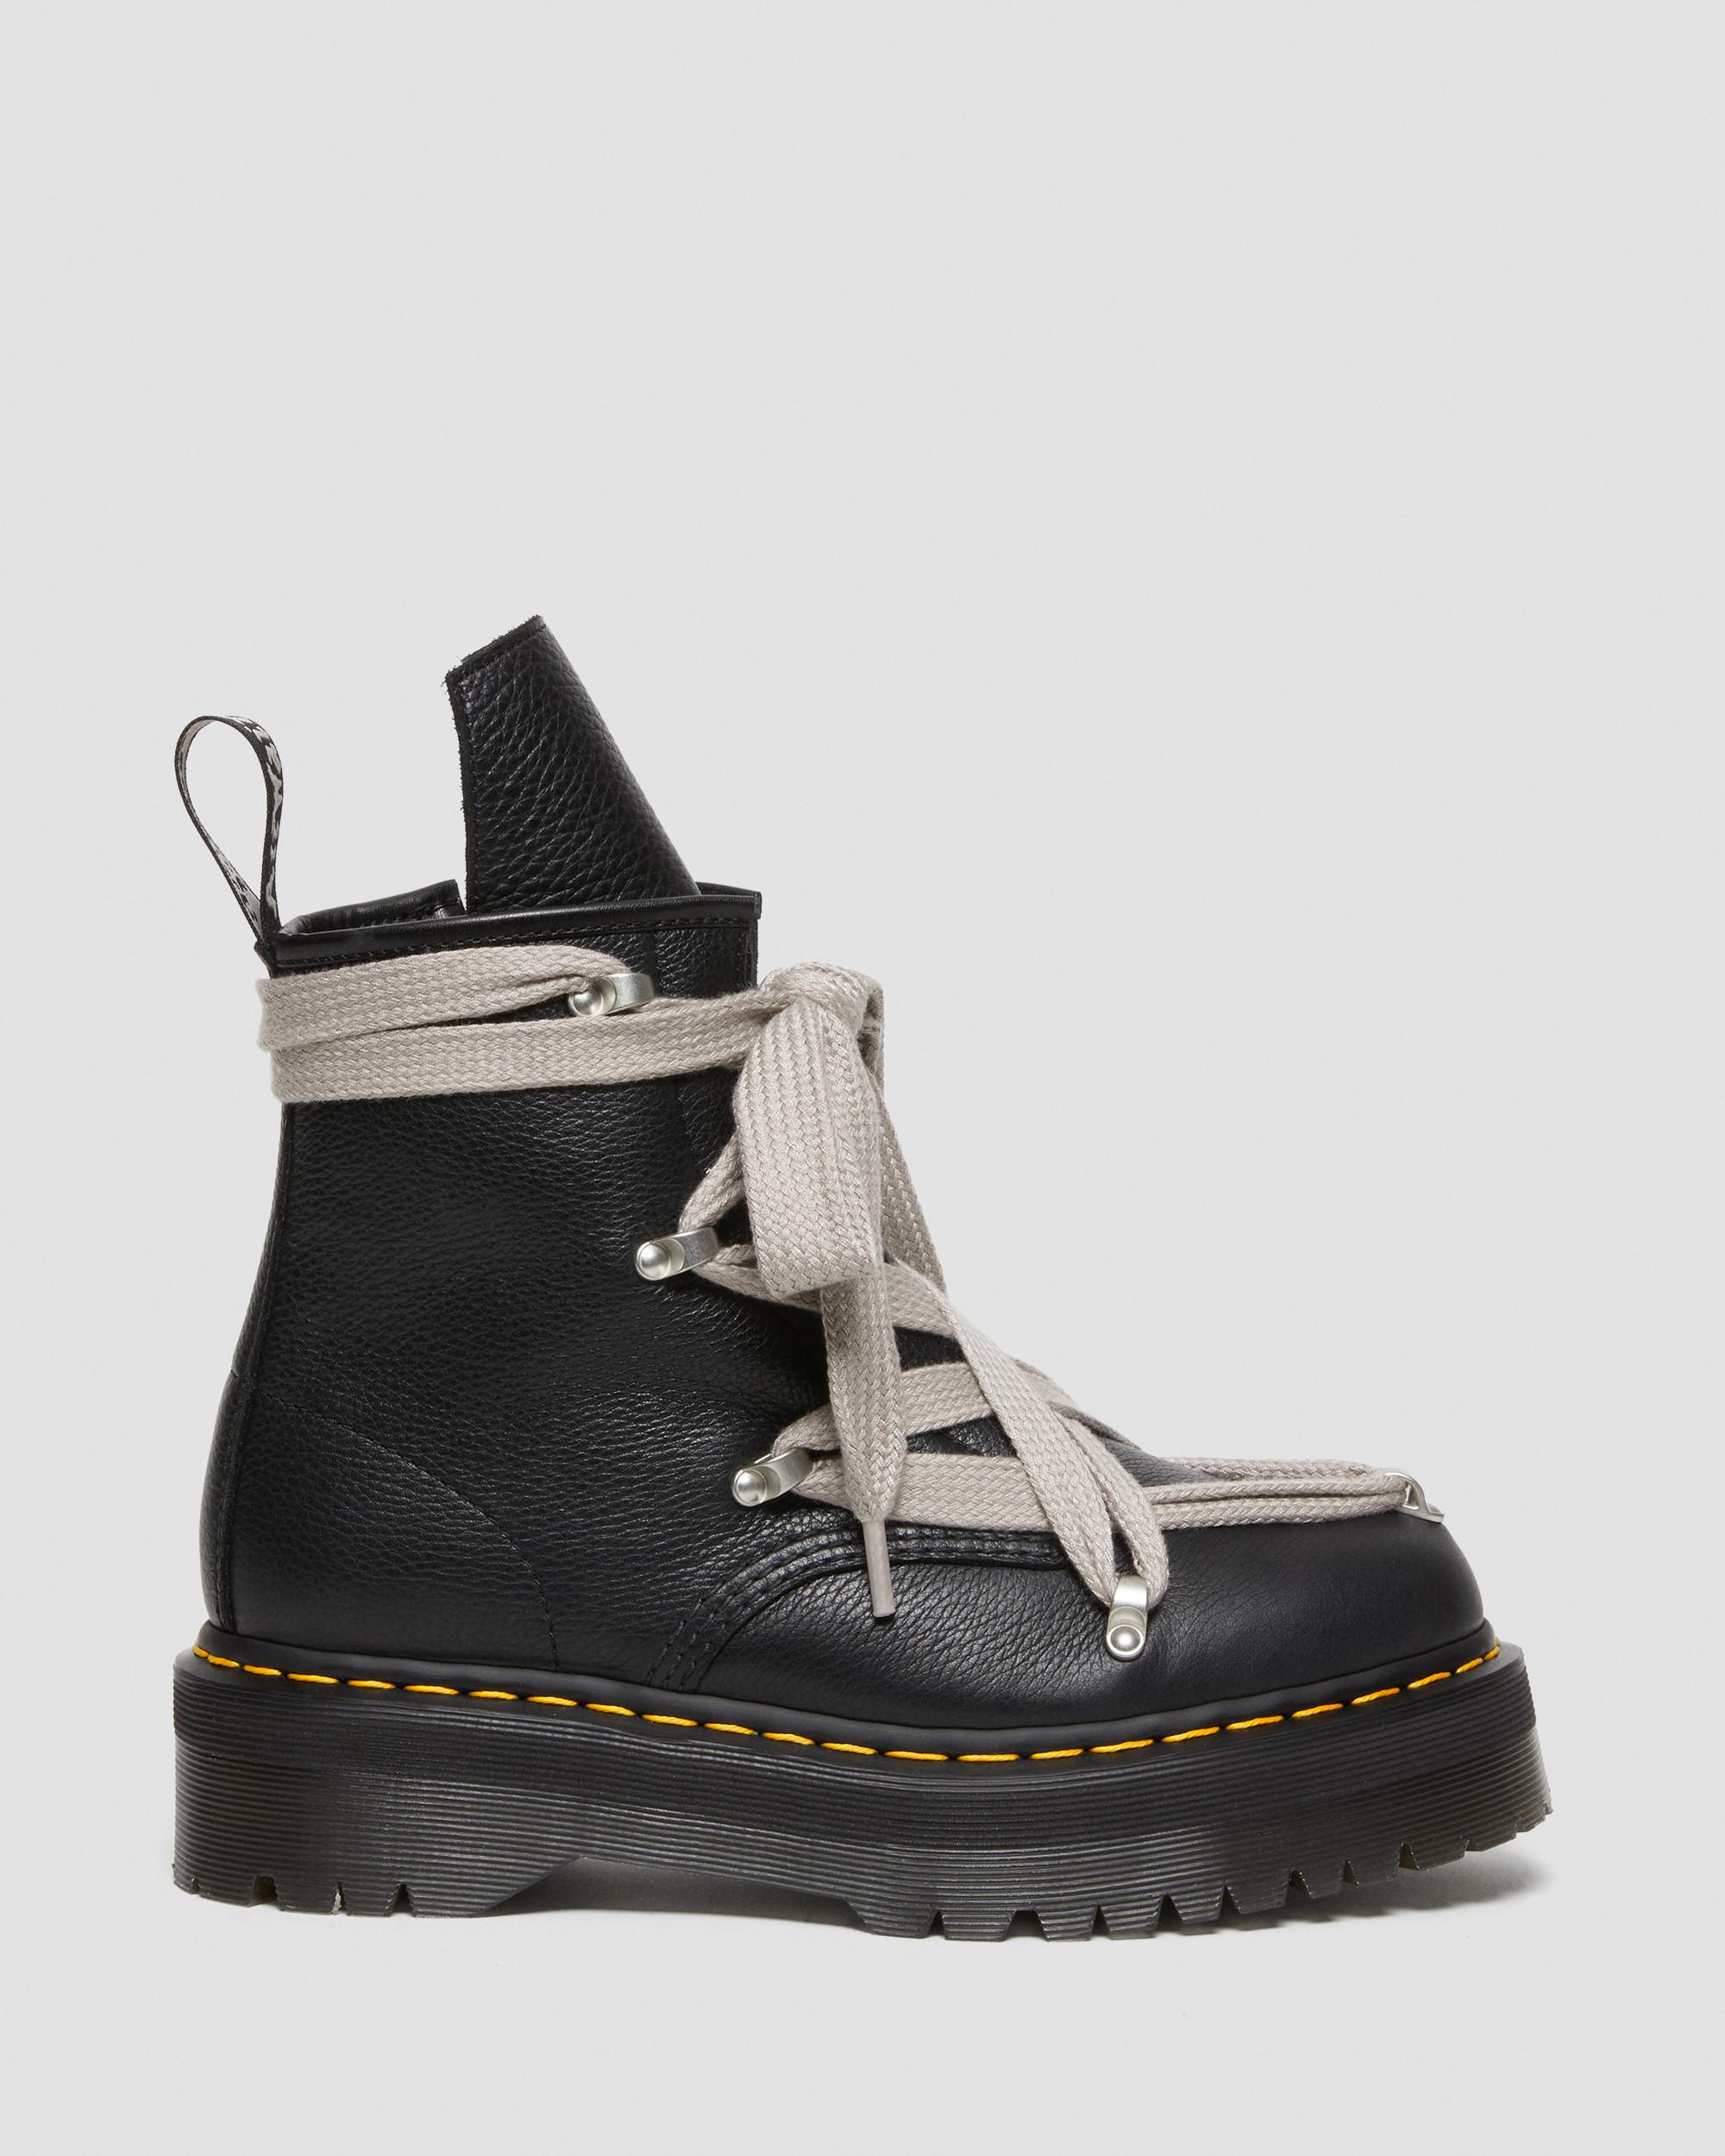 1460 Rick Owens Pent Leather Platform Boot in Black | Dr. Martens